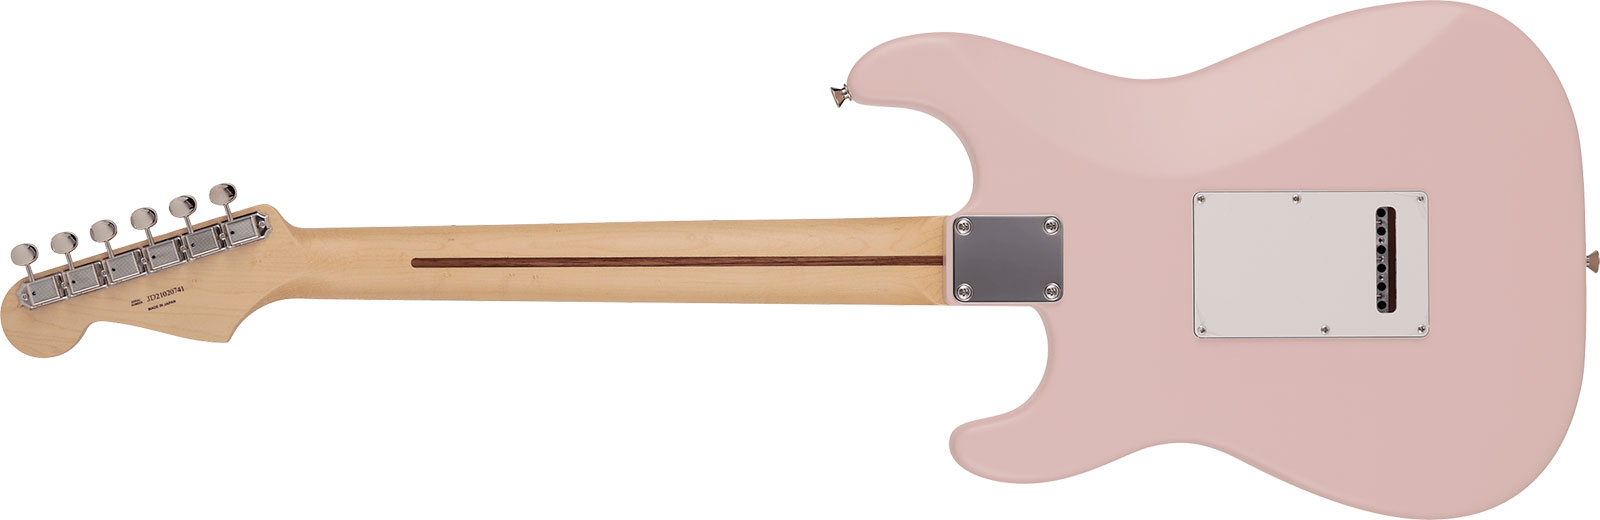 Fender Strat Junior Mij Jap 3s Trem Rw - Satin Shell Pink - Electric guitar for kids - Variation 1